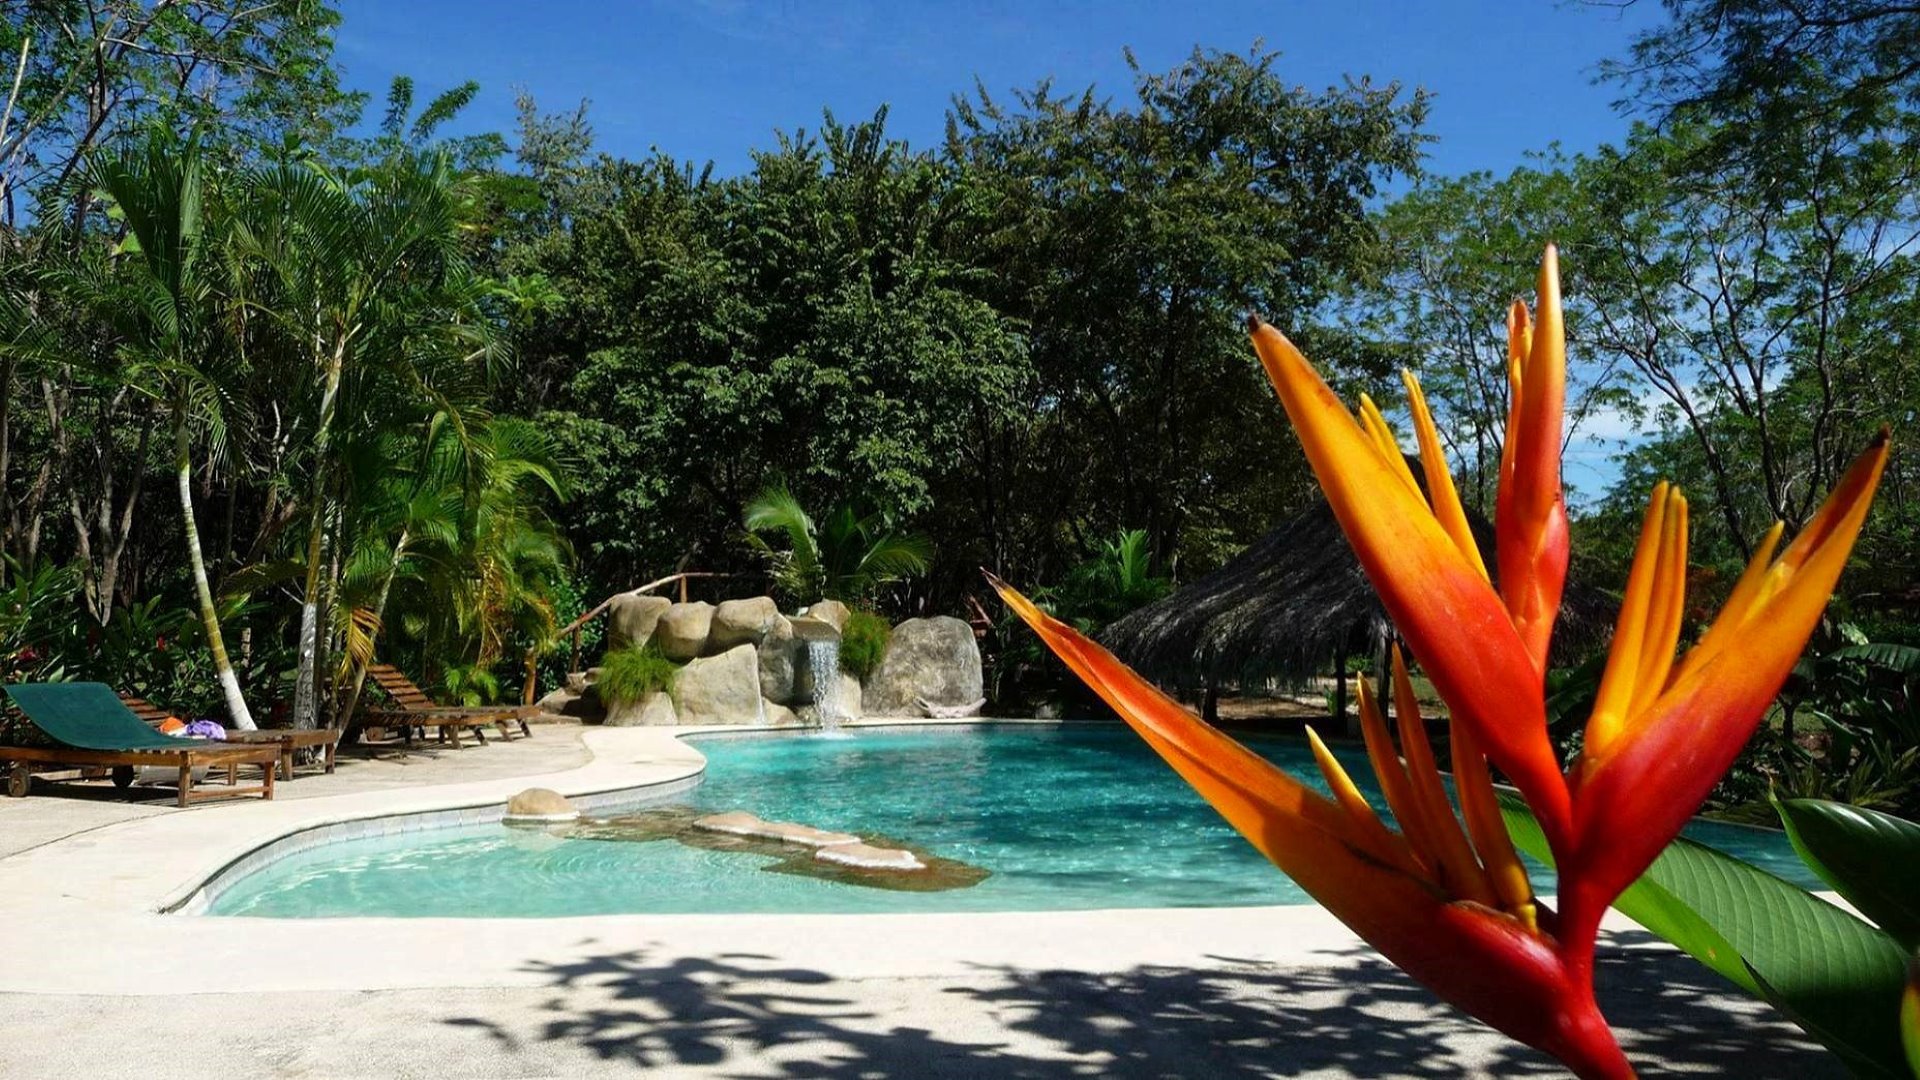 2200-La piscine de la propriété à vendre sur la côte Pacifique du Costa Rica